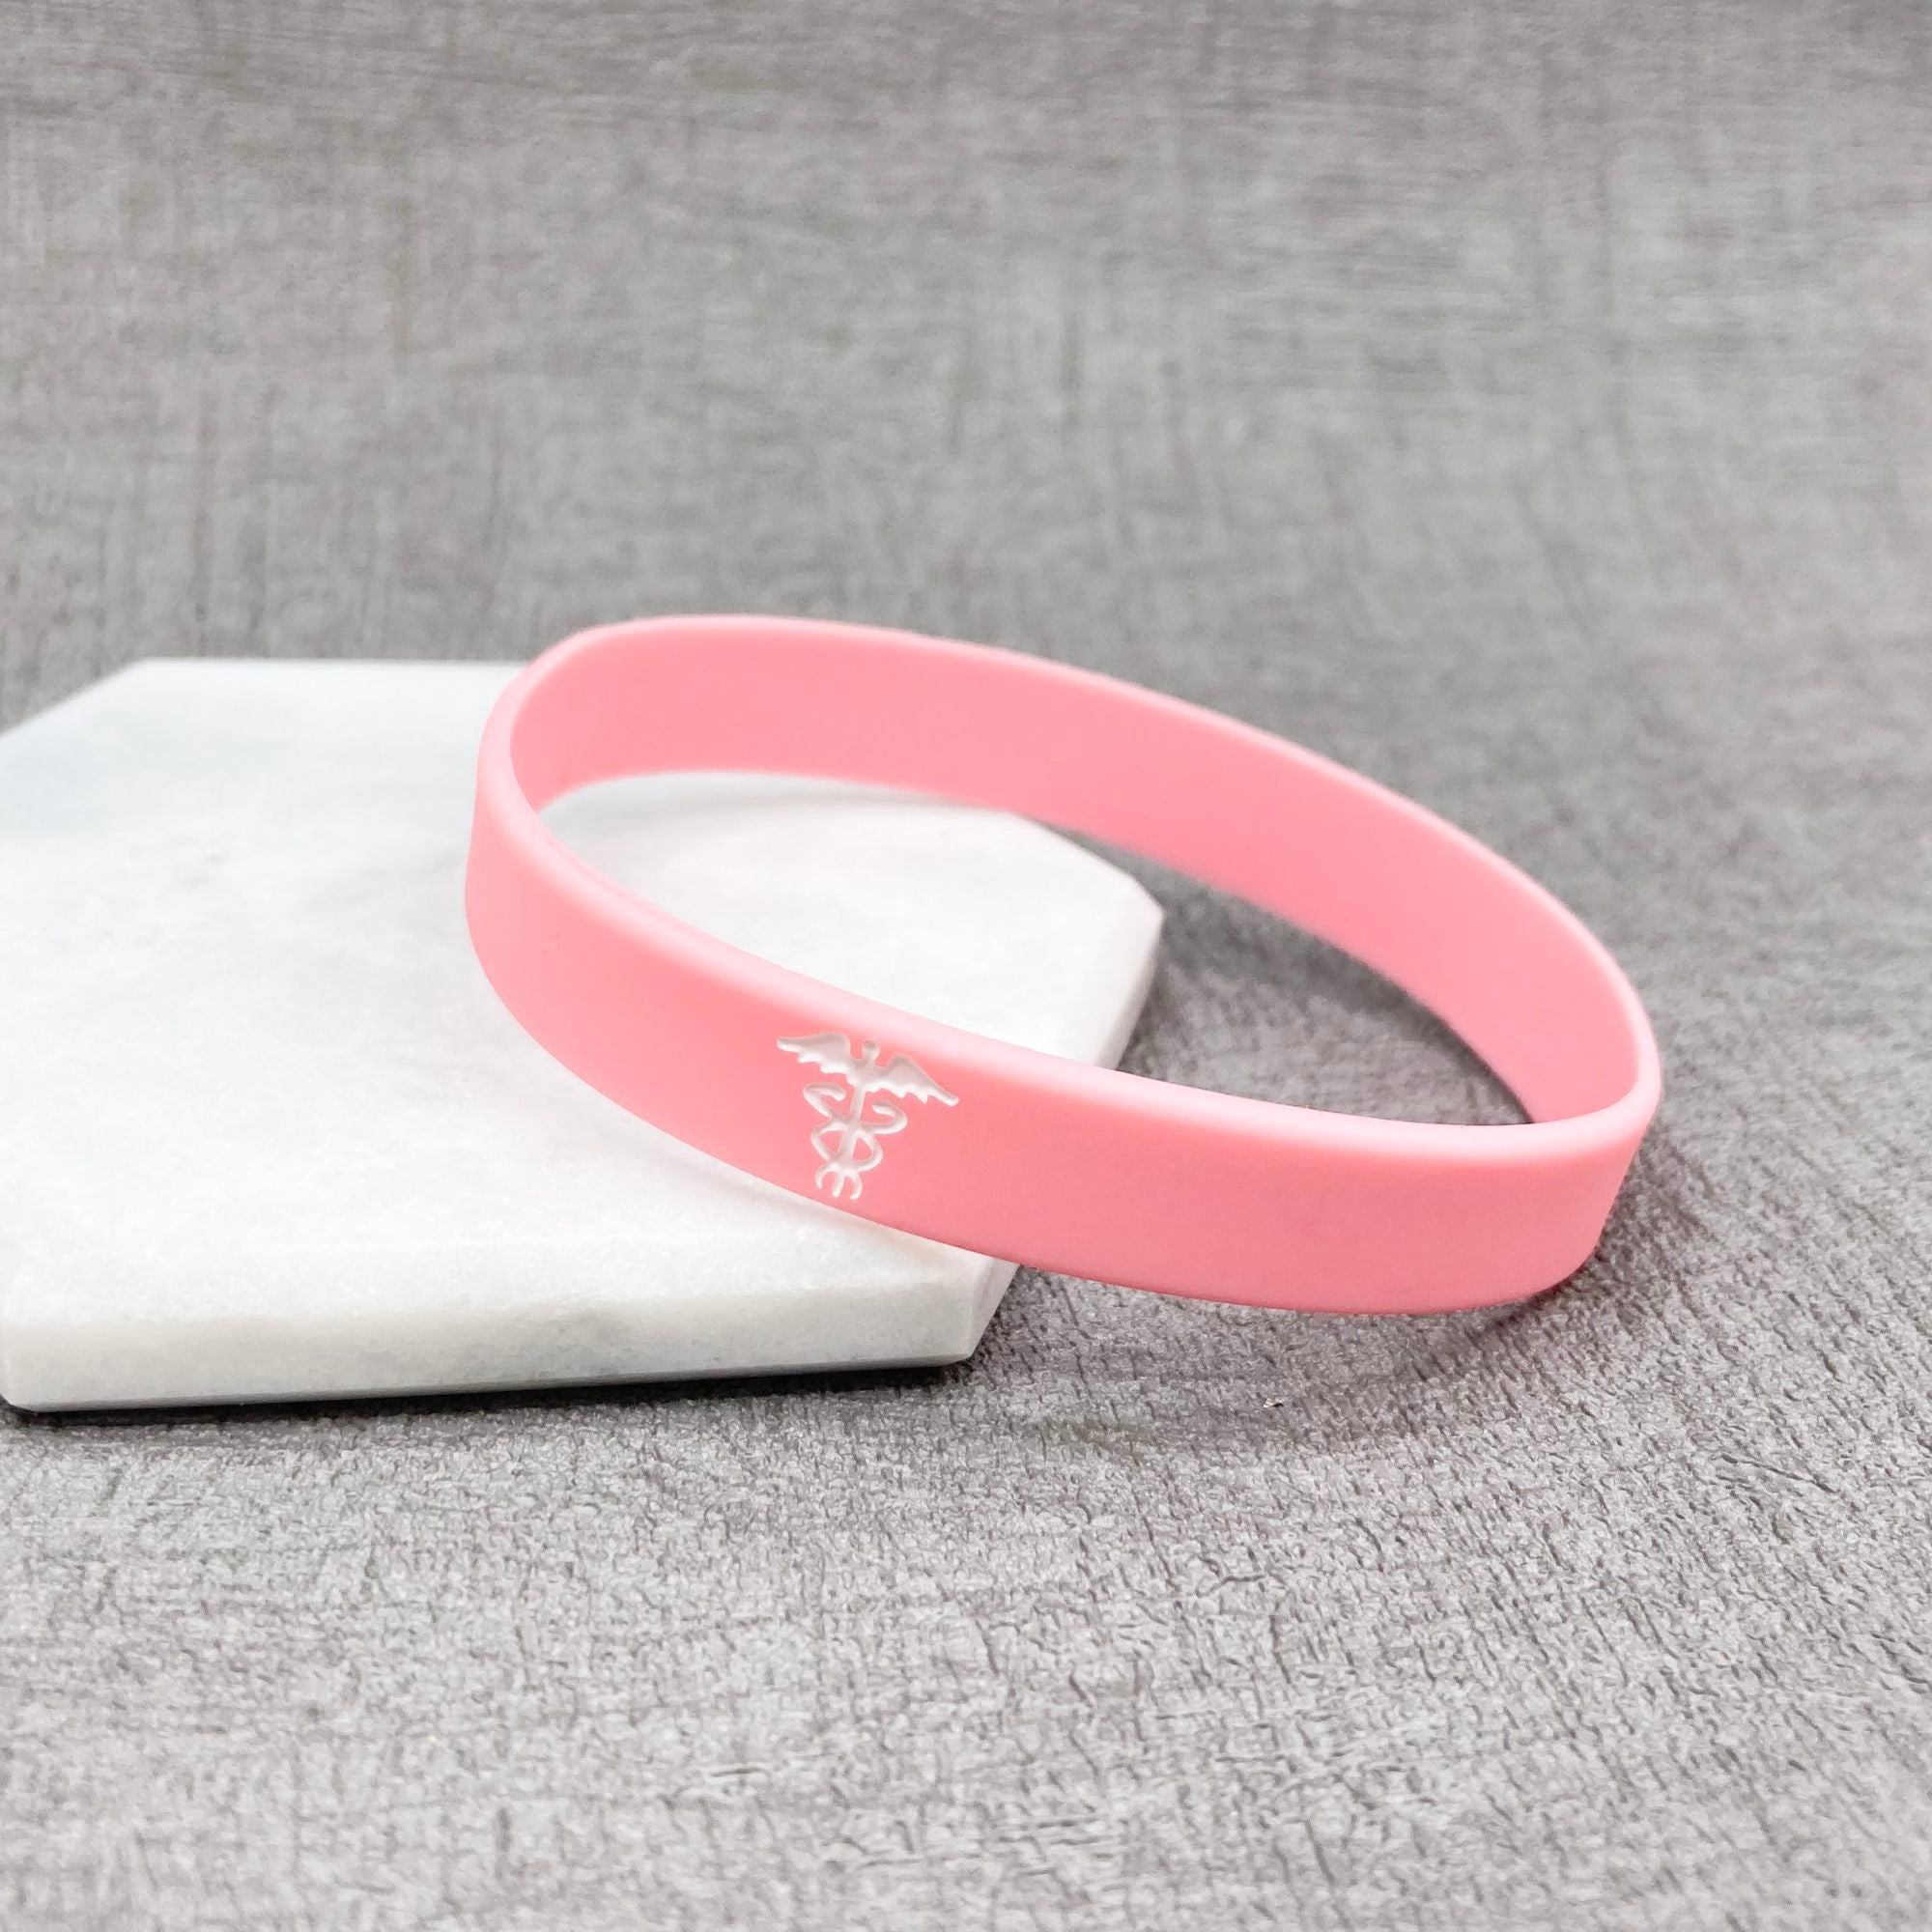 hidden message medical wristband pink custom